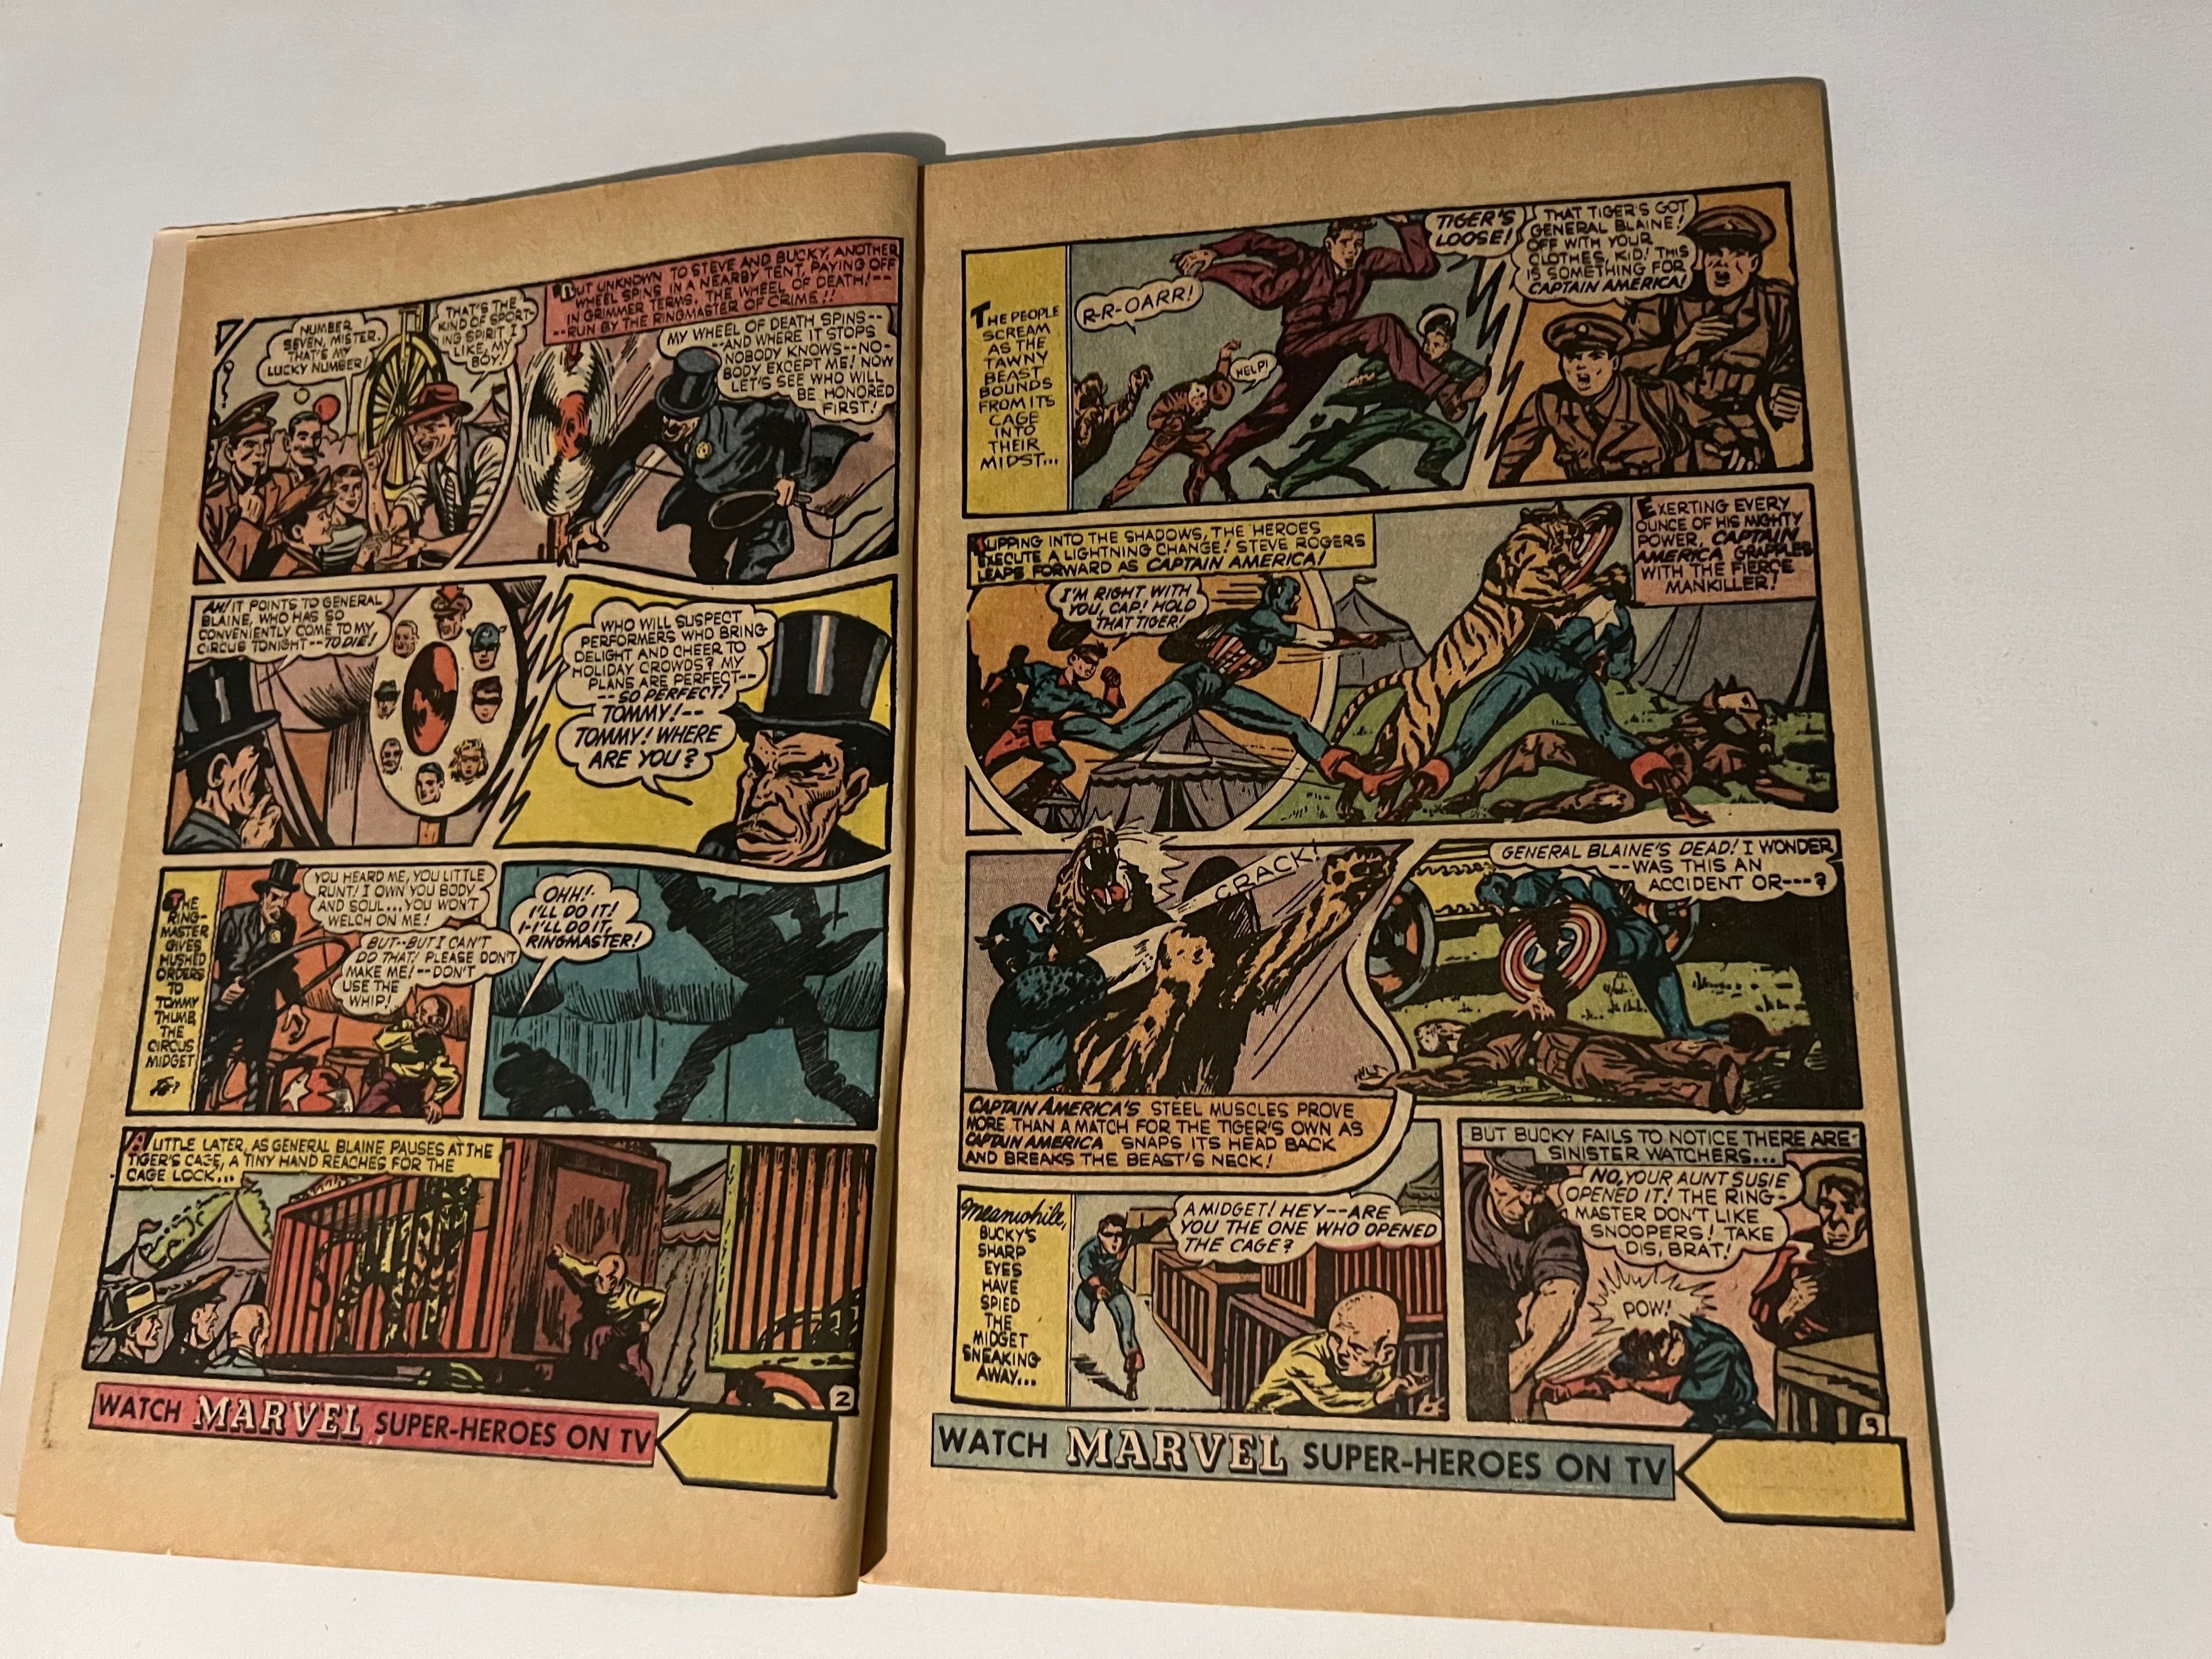 Komiks oryginalny amerykański Fantasy Masterpieces z 1966 roku